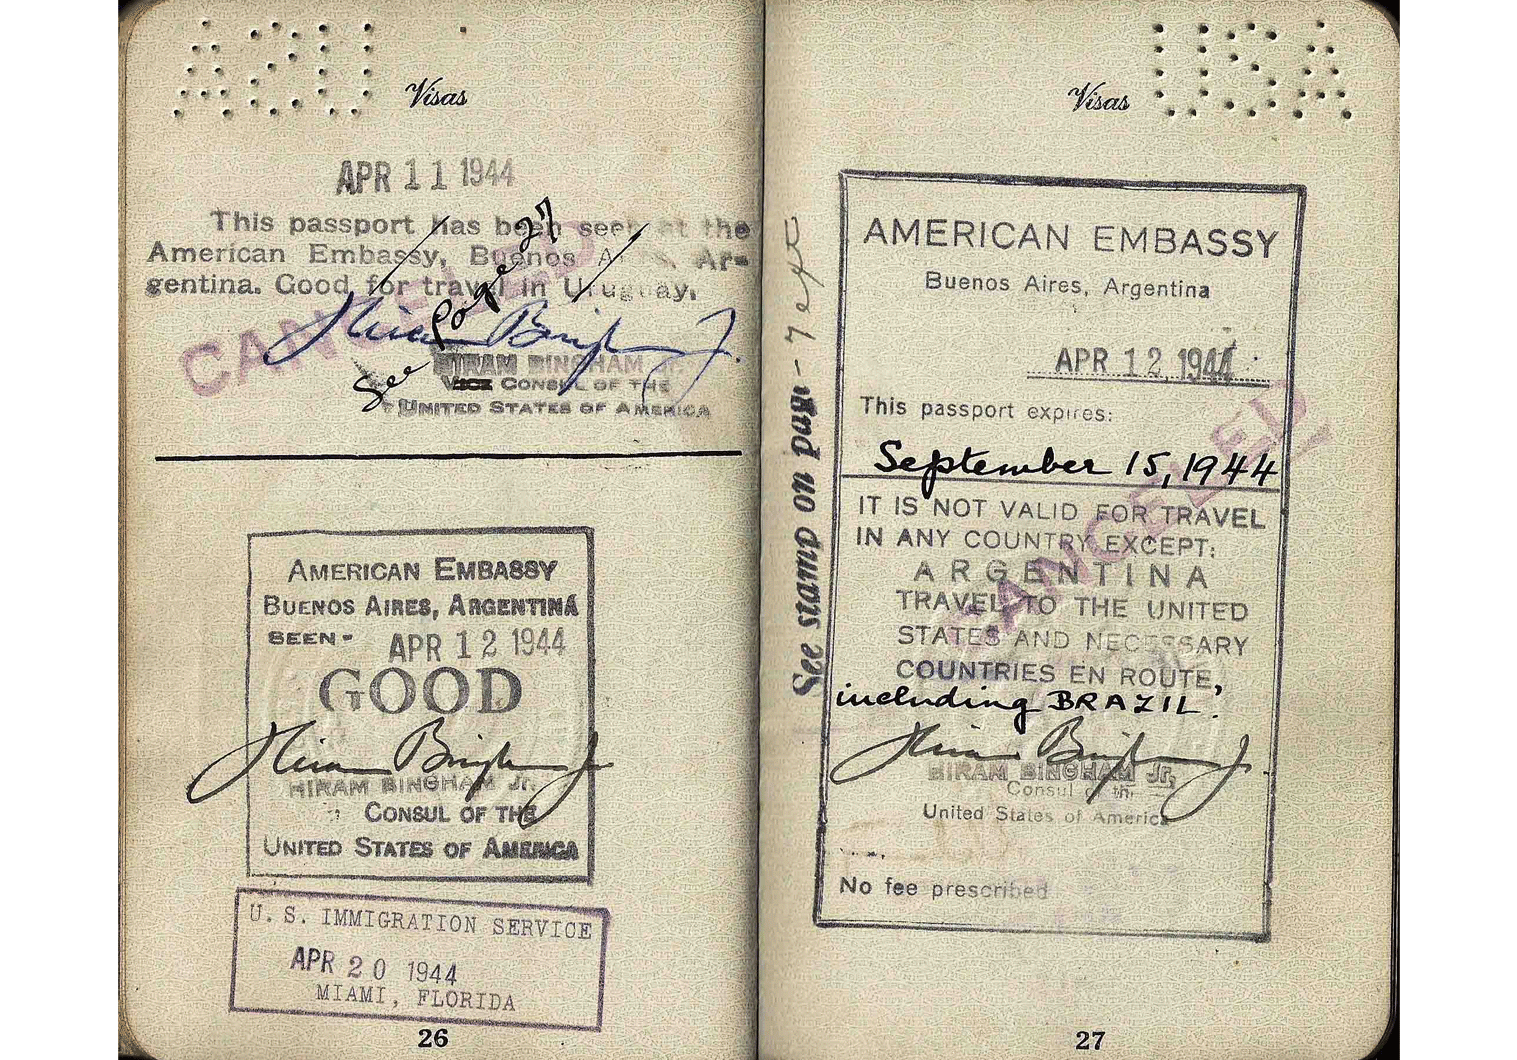 WW2 passport with Hiram Bingham IV visa